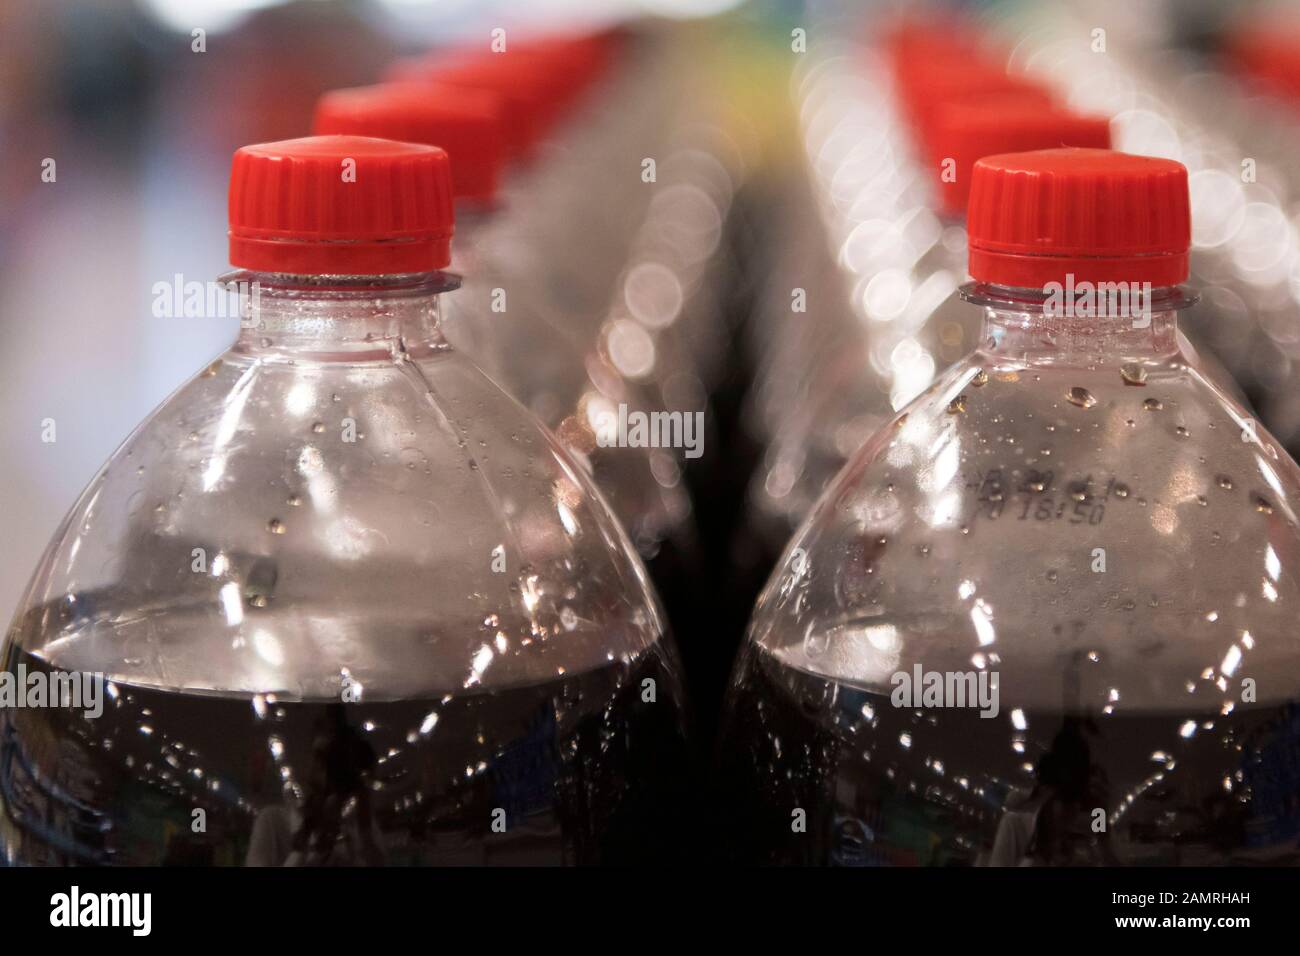 Fizzy zucchero bevande in vendita in bottiglie di plastica in un supermercato del Regno Unito. Foto Stock